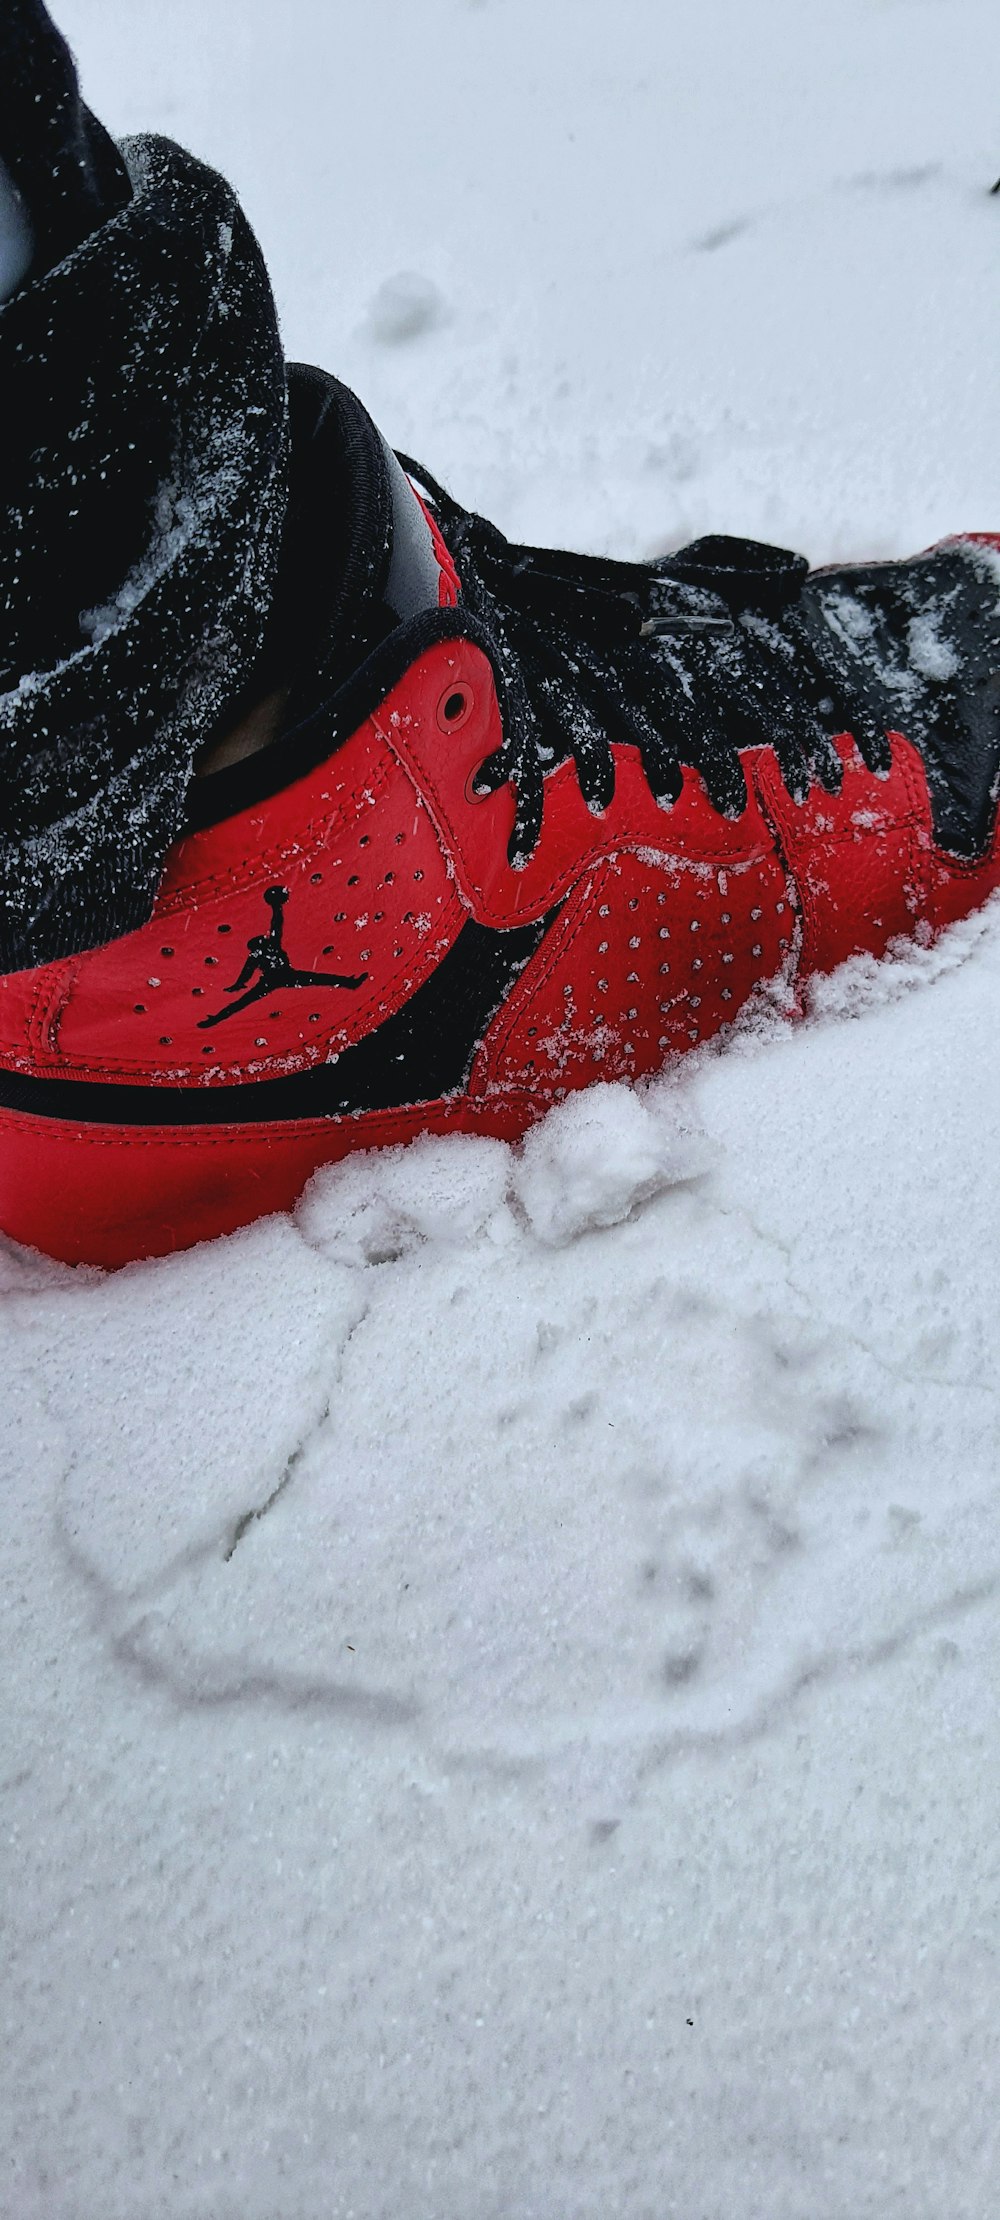 chaussures de sport nike rouge et noir sur la neige photo – Photo Pays-bas  Gratuite sur Unsplash